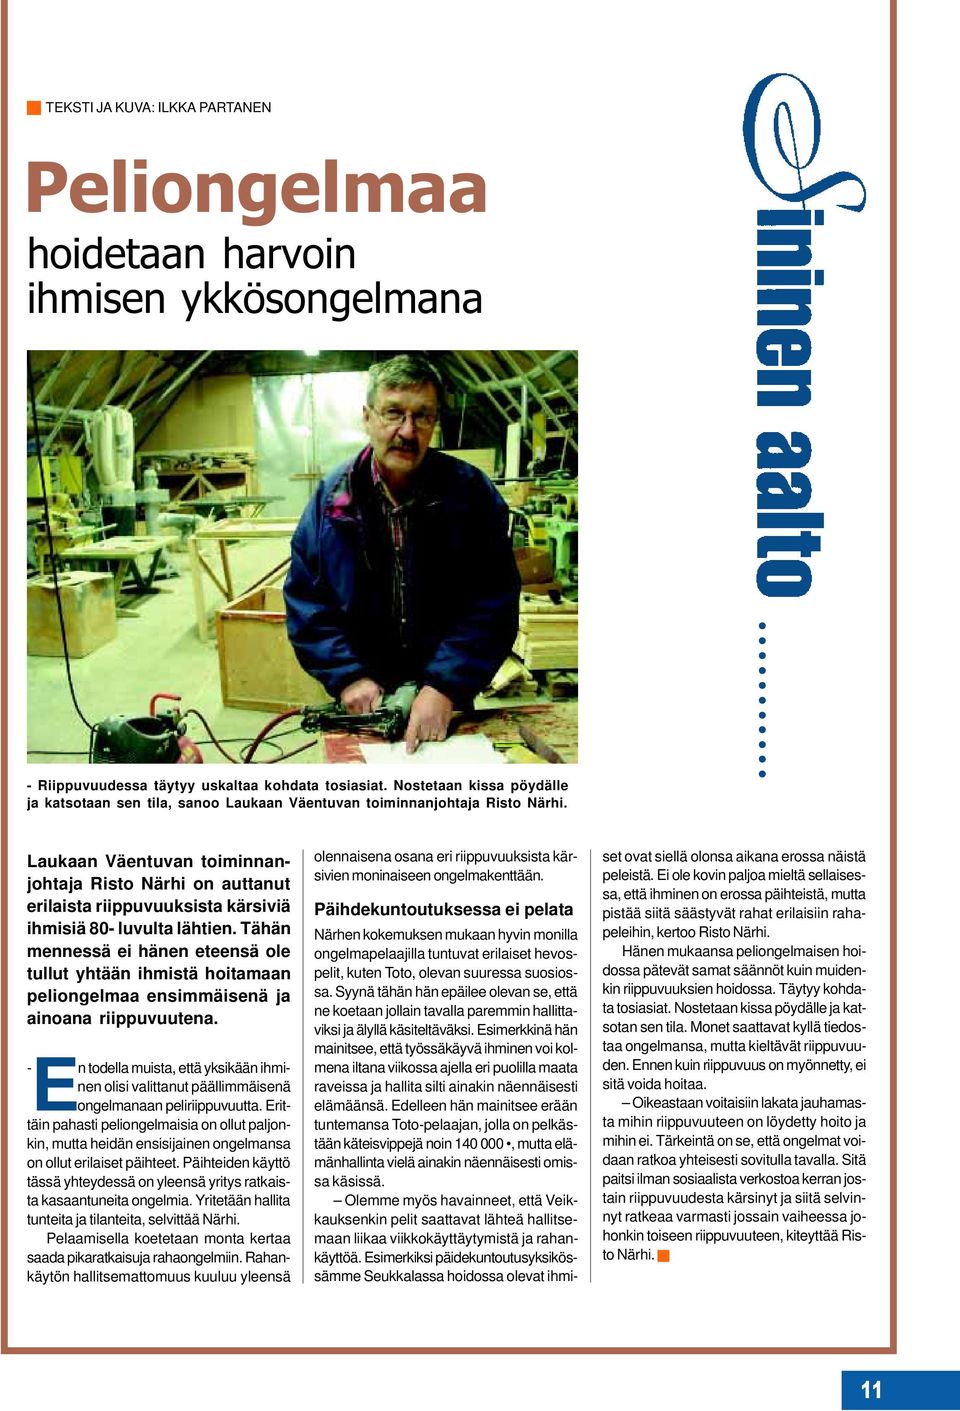 Laukaan Väentuvan toiminnanjohtaja Risto Närhi on auttanut erilaista riippuvuuksista kärsiviä ihmisiä 80- luvulta lähtien.